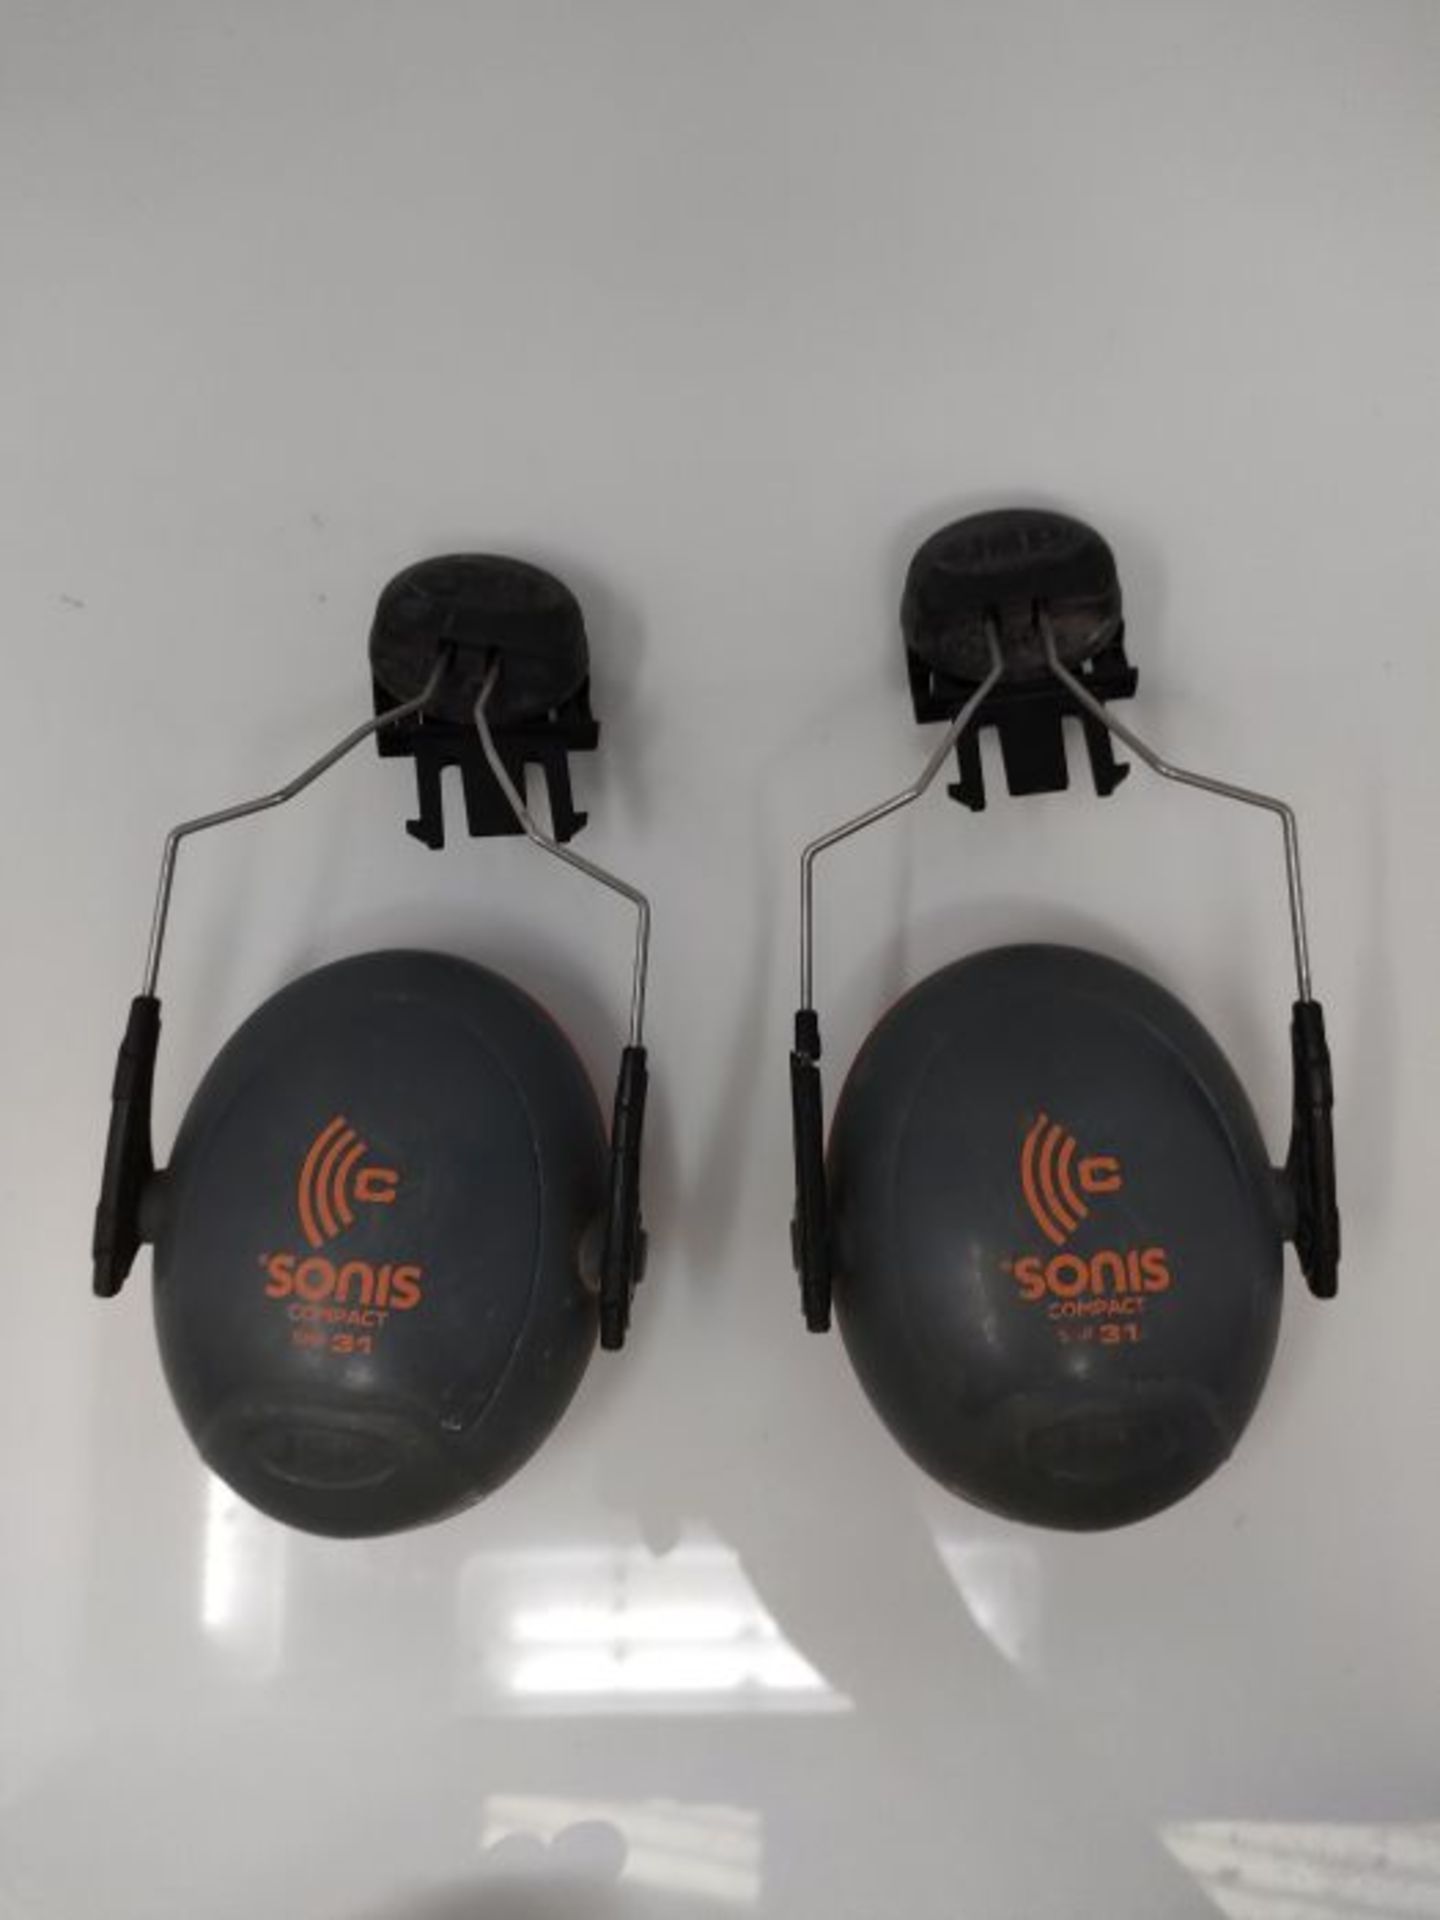 [CRACKED] JSP Sonis Compact Helmet Mounted Ear Defenders - SNR 31 - (AEB030-0CY-000) - Image 2 of 2